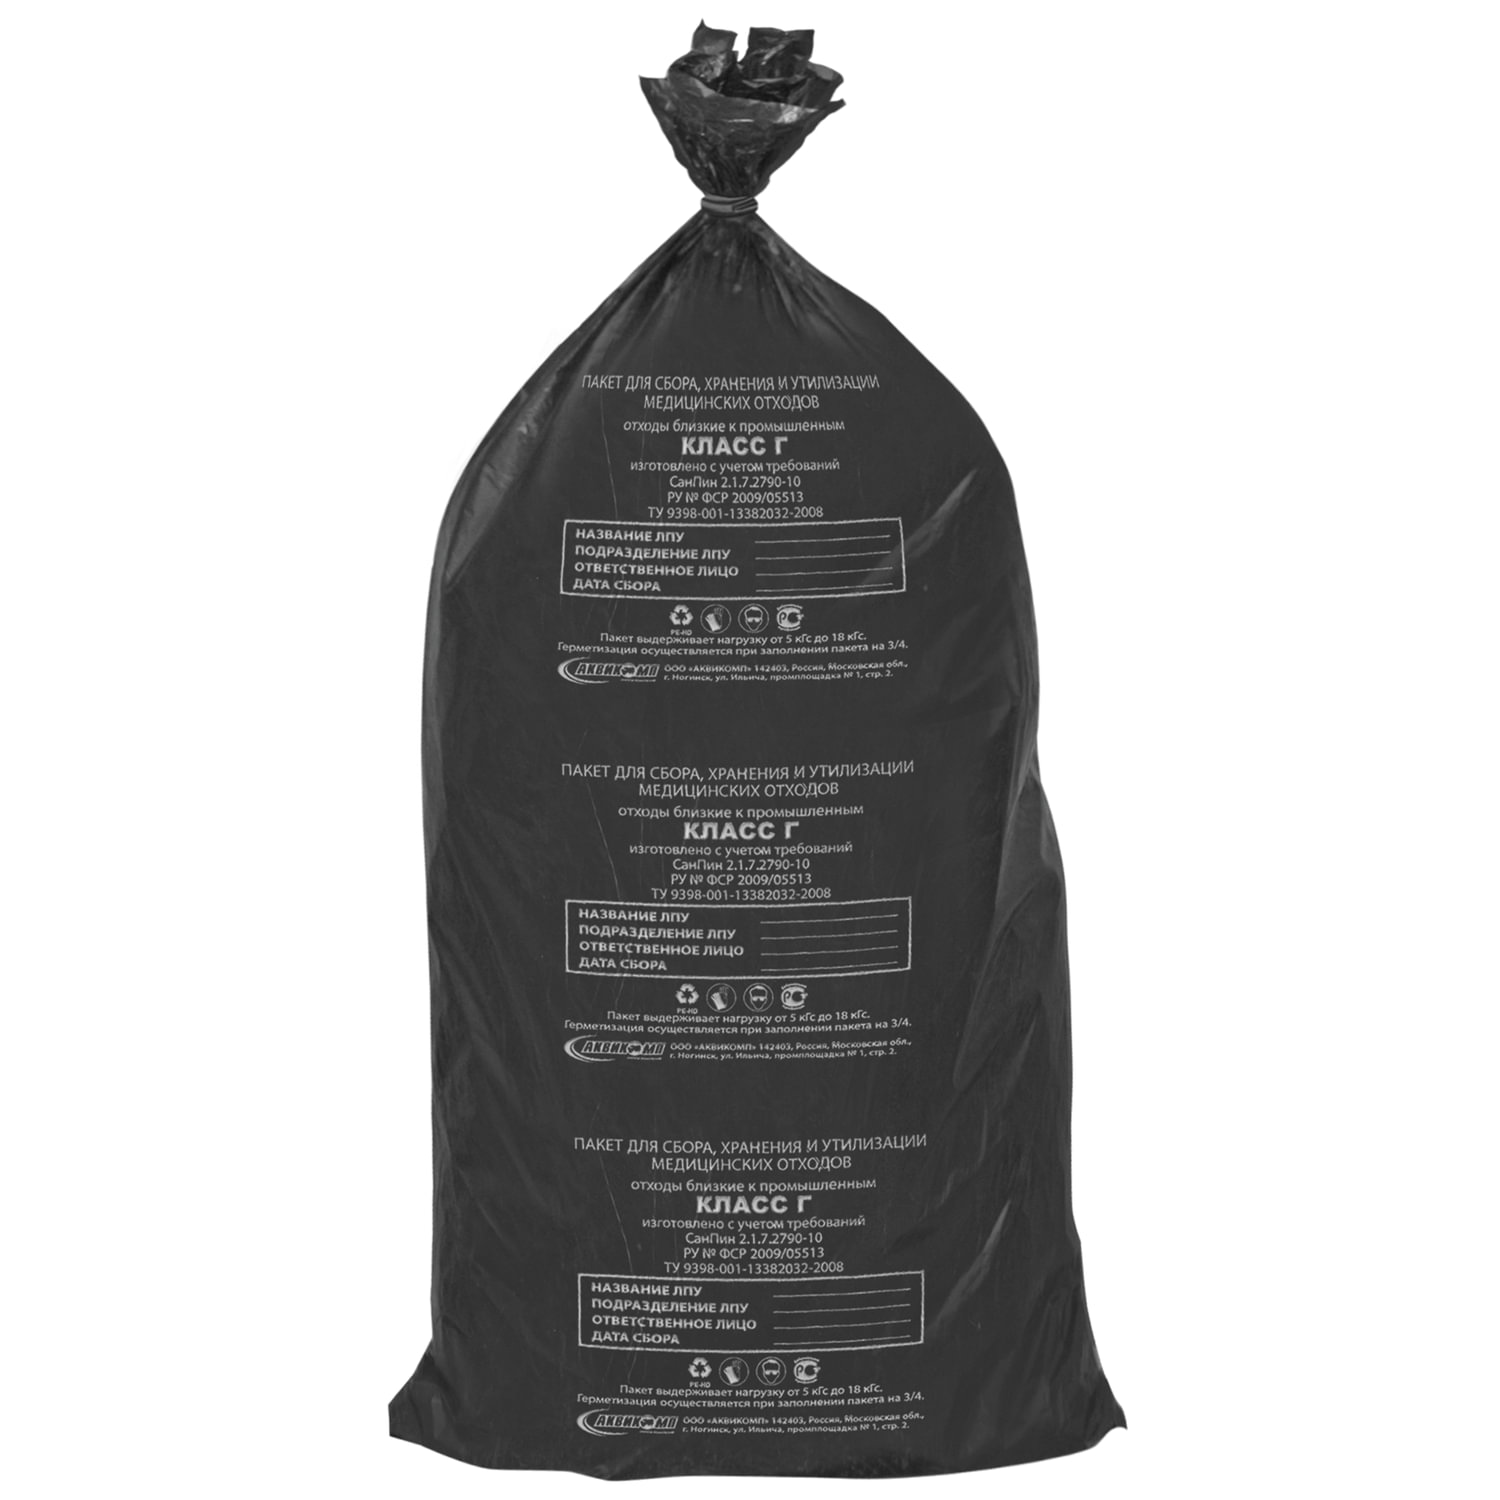 Мешки для мусора медицинские КОМПЛЕКТ 20 шт., класс Г (черные), 100 л, 60х110 см, 14 мкм, АКВИКОМП, комплект 5 шт.